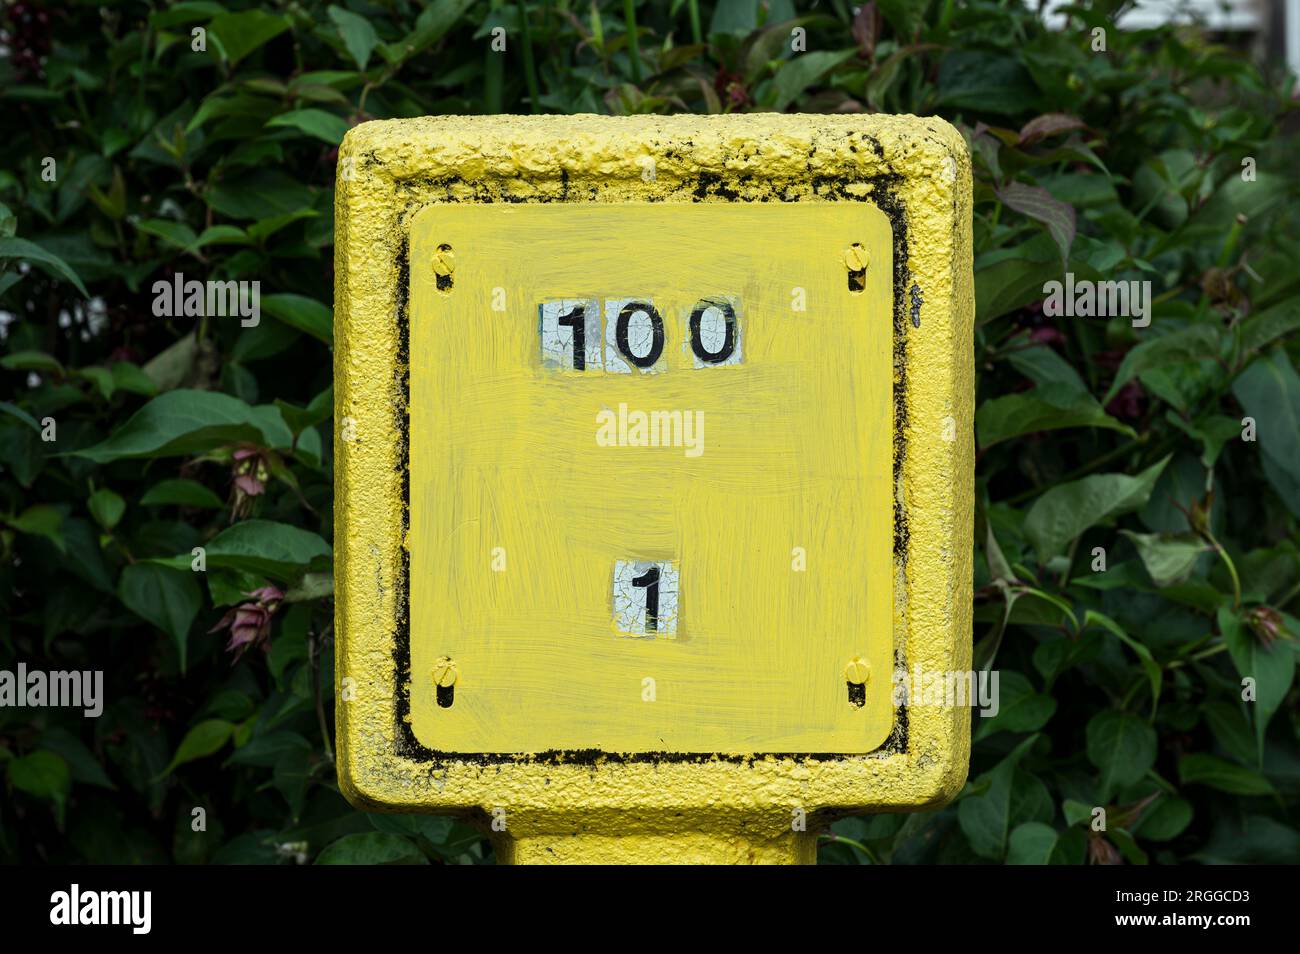 Nummer 1 bis 100 auf einem gelben Hydrantenschild Stockfoto